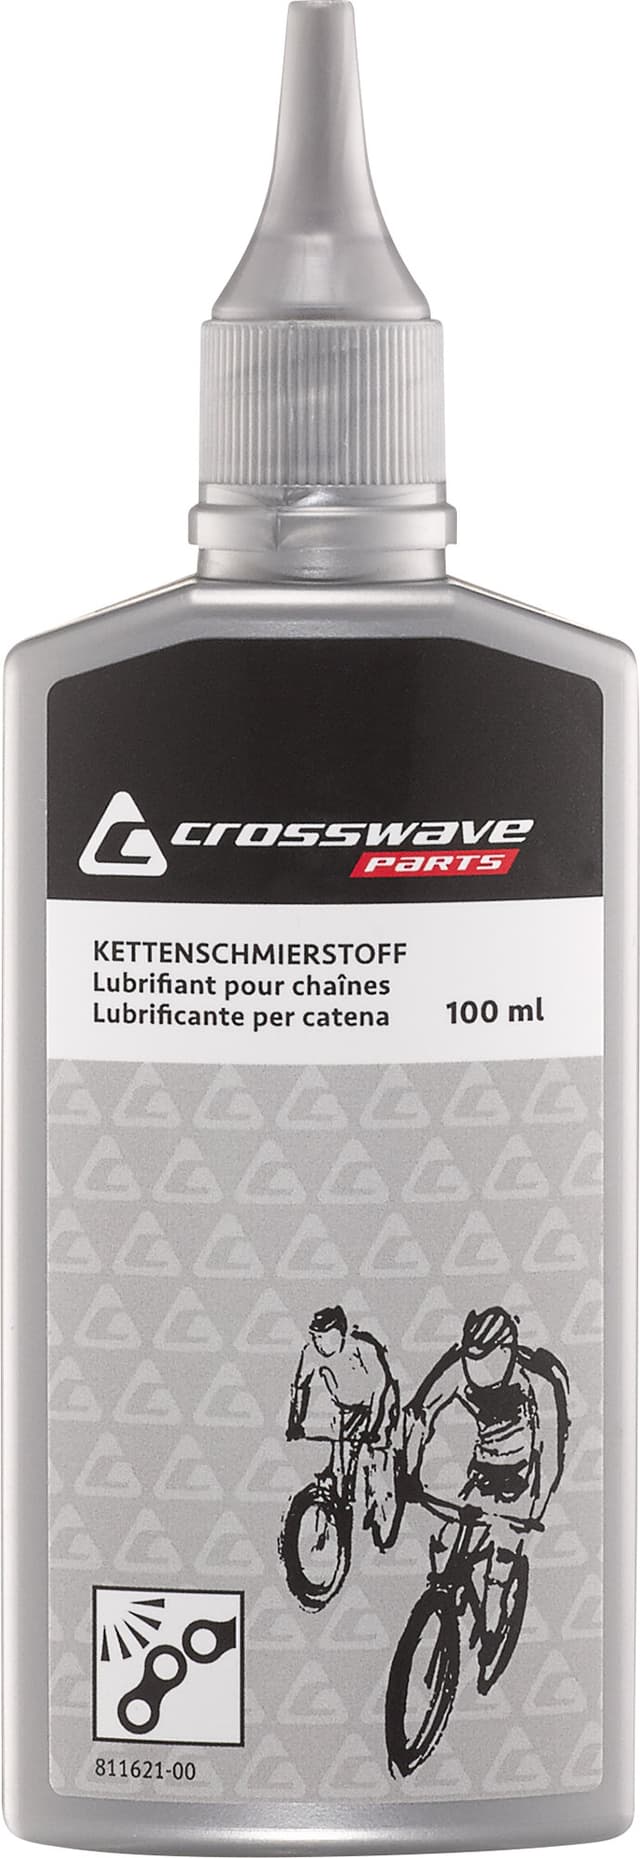 crosswave Ketten-Schmiermittel trocken Pflegemittel